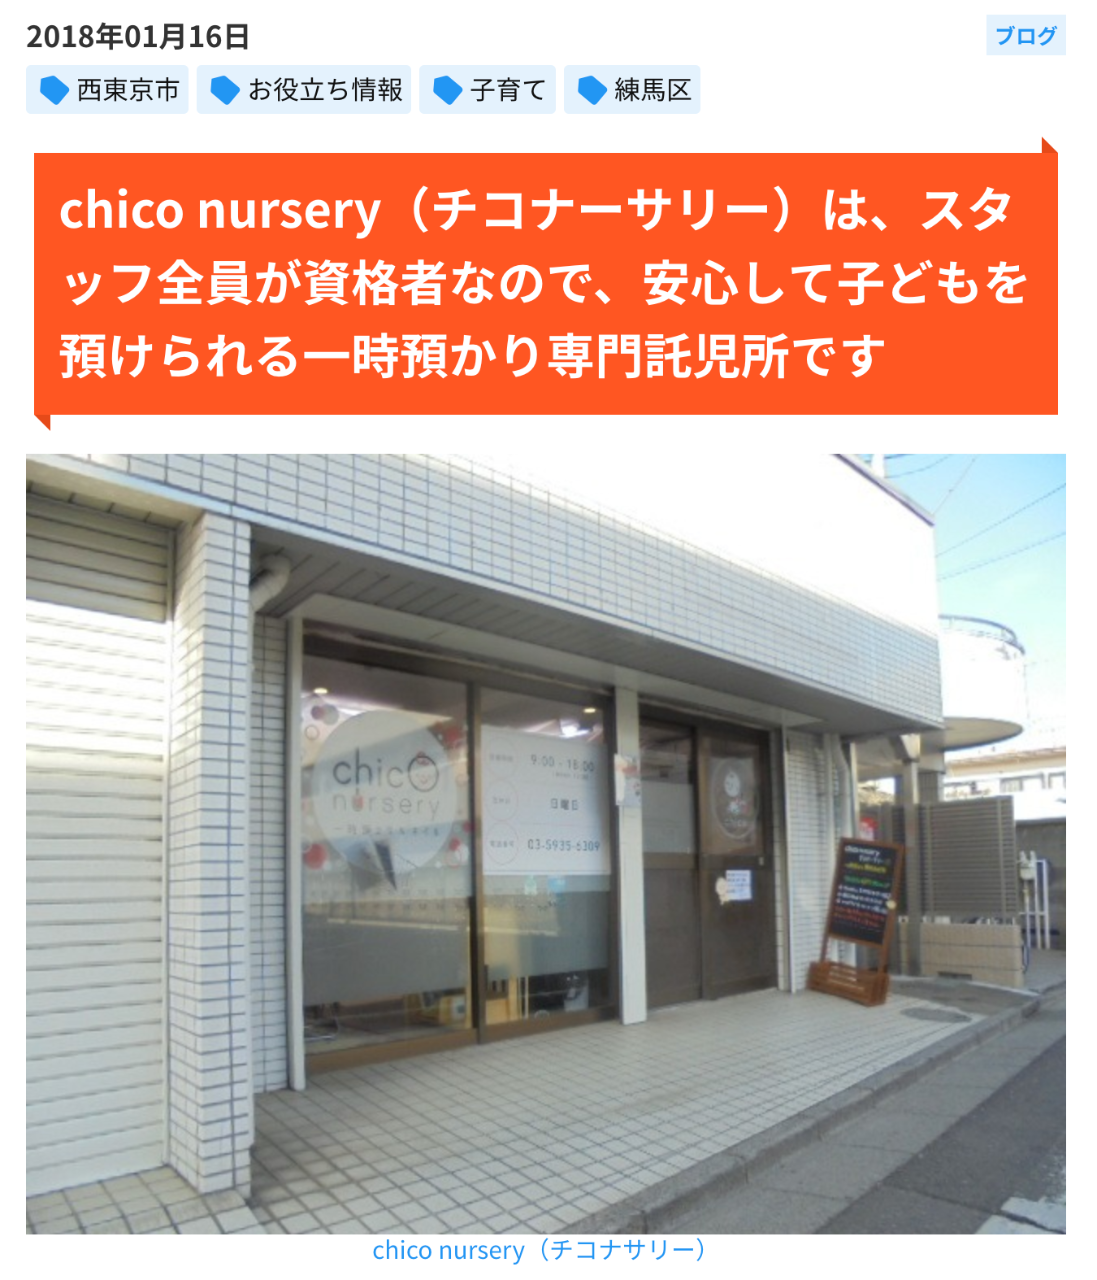 西東京市の不動産会社スプラッシュのブログで紹介した同市の託児所チコナーサリー様を紹介したブログです。